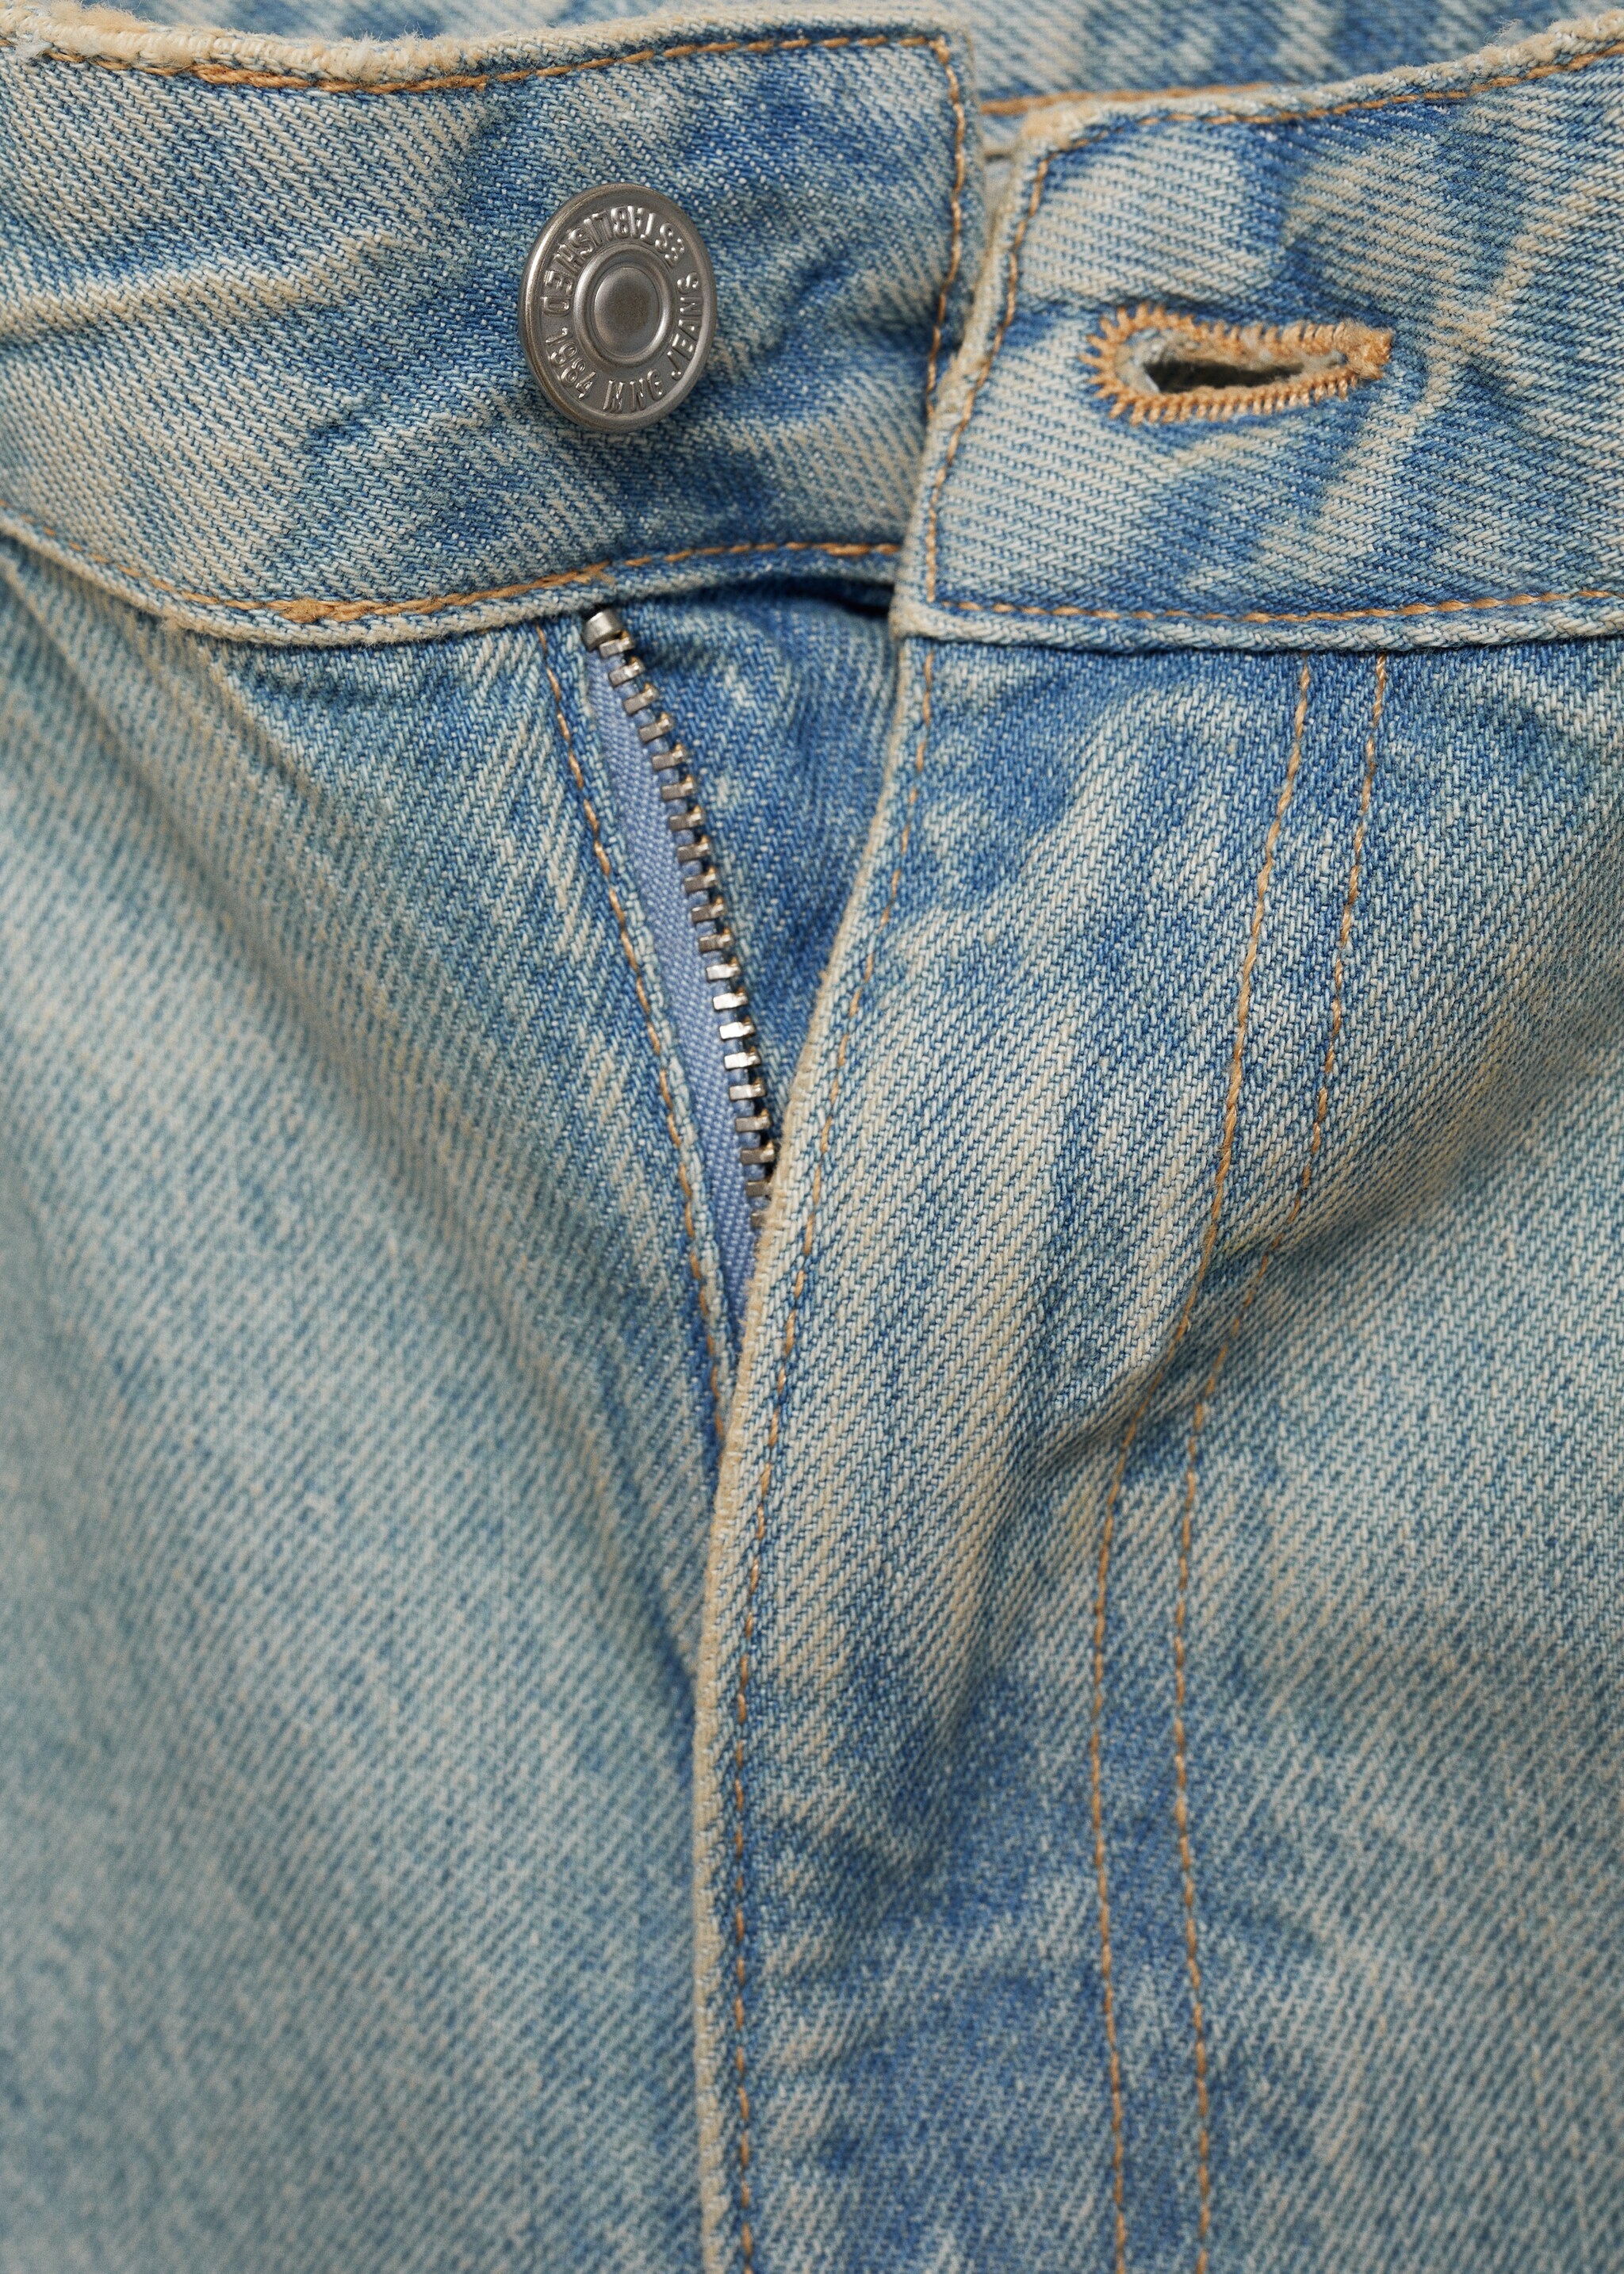 Mira straight jeans medium rise - Pormenor do artigo 8